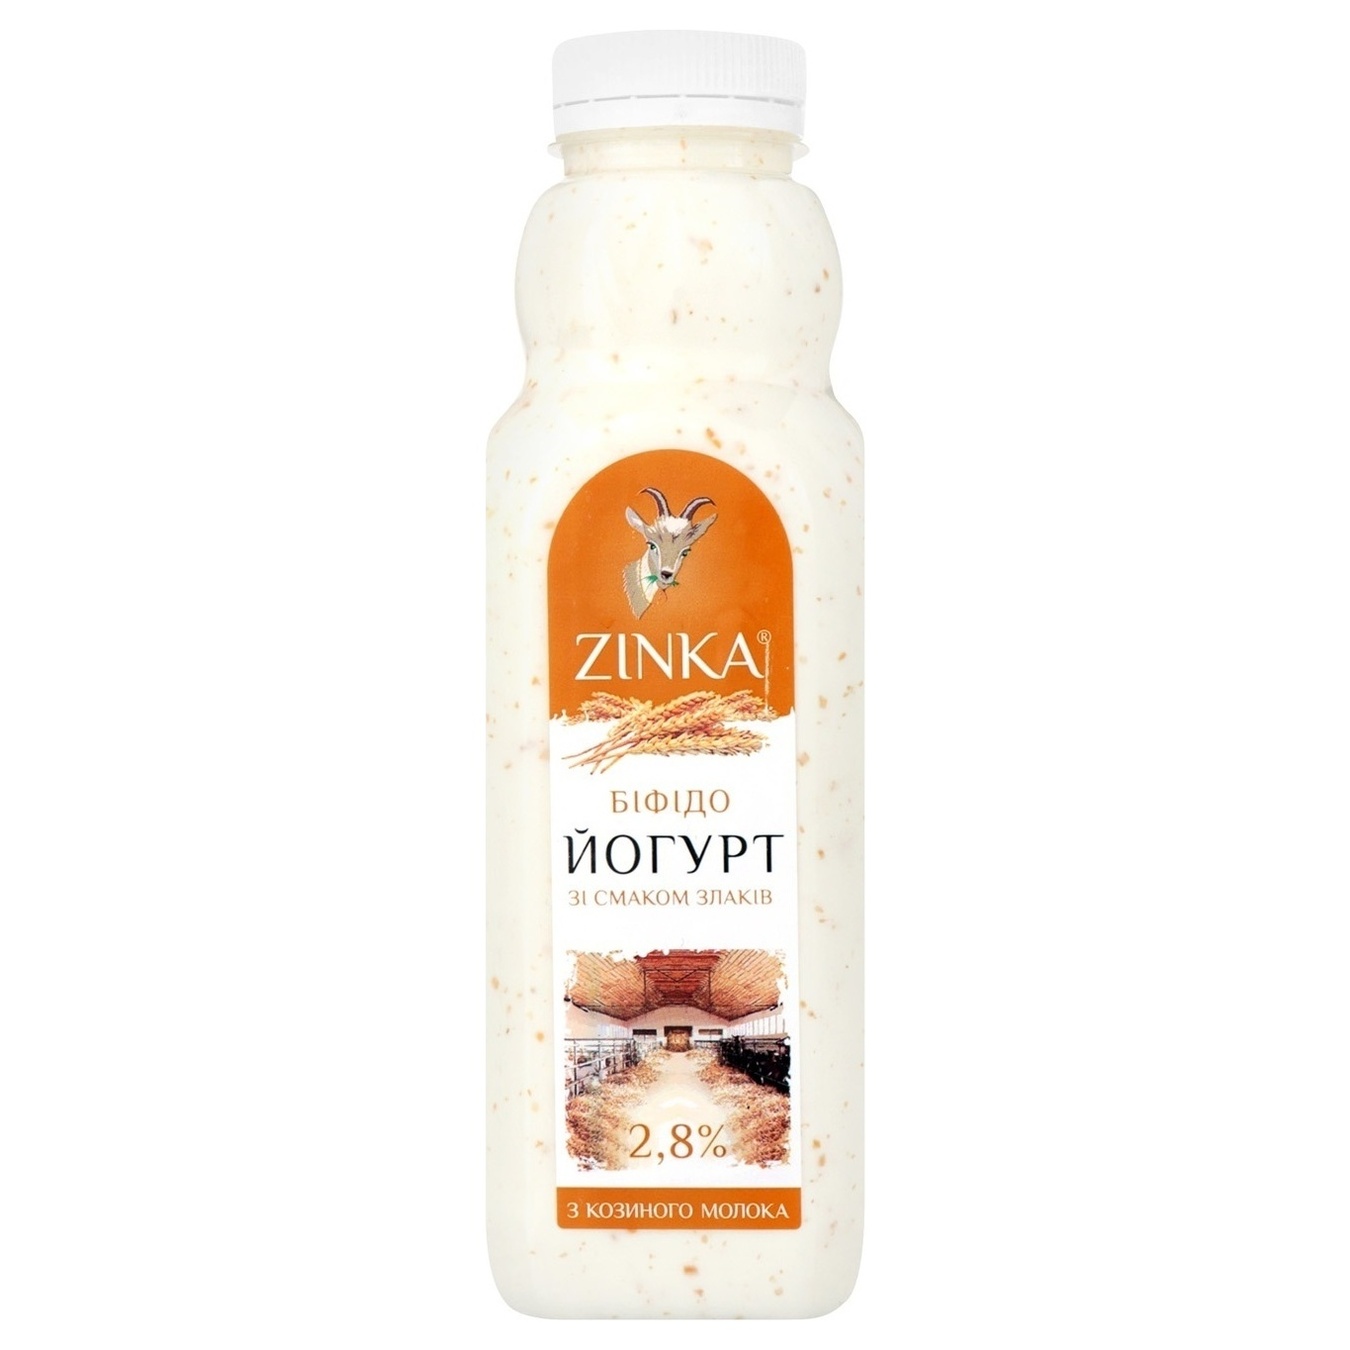 Біфідойогурт Zinka з козиного молока зі смаком злаків 2,8% 300г